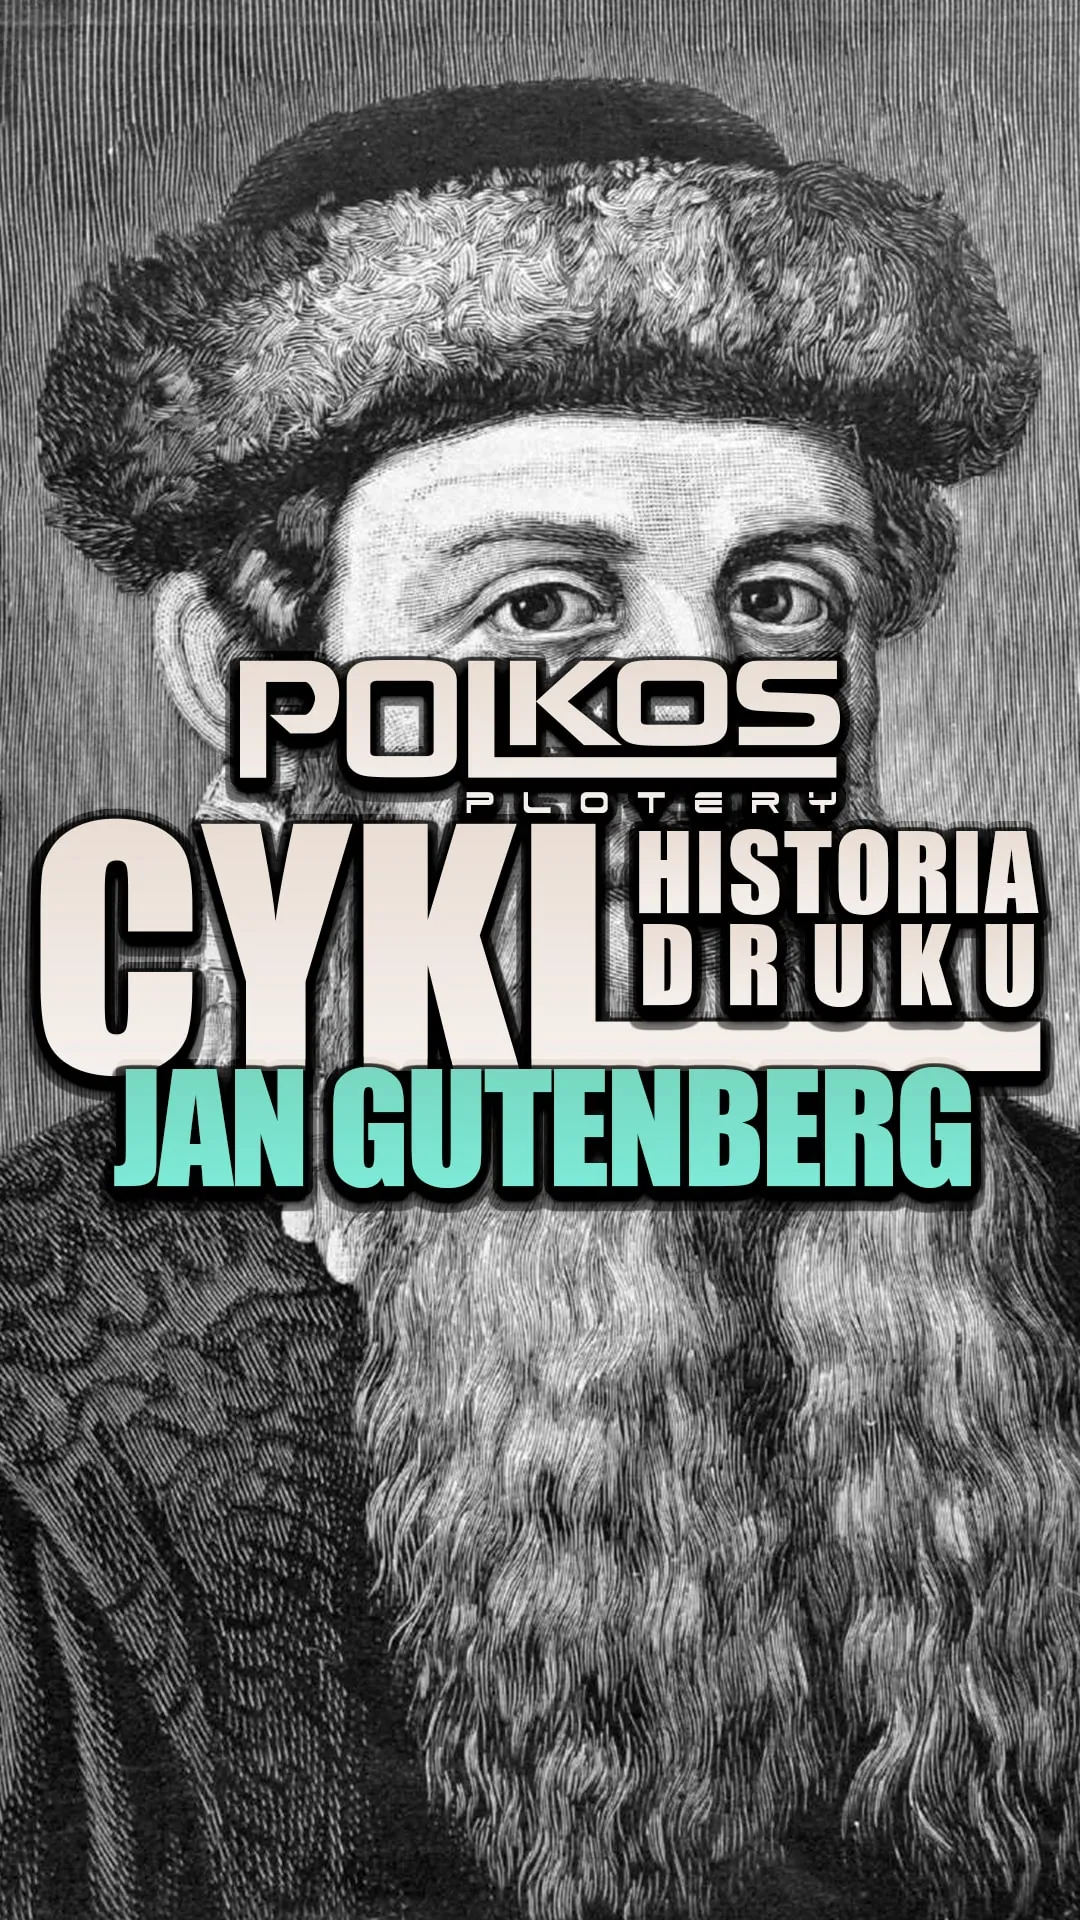 Jan Gutenberg, czyli ojciec rewolucji w światowym druku